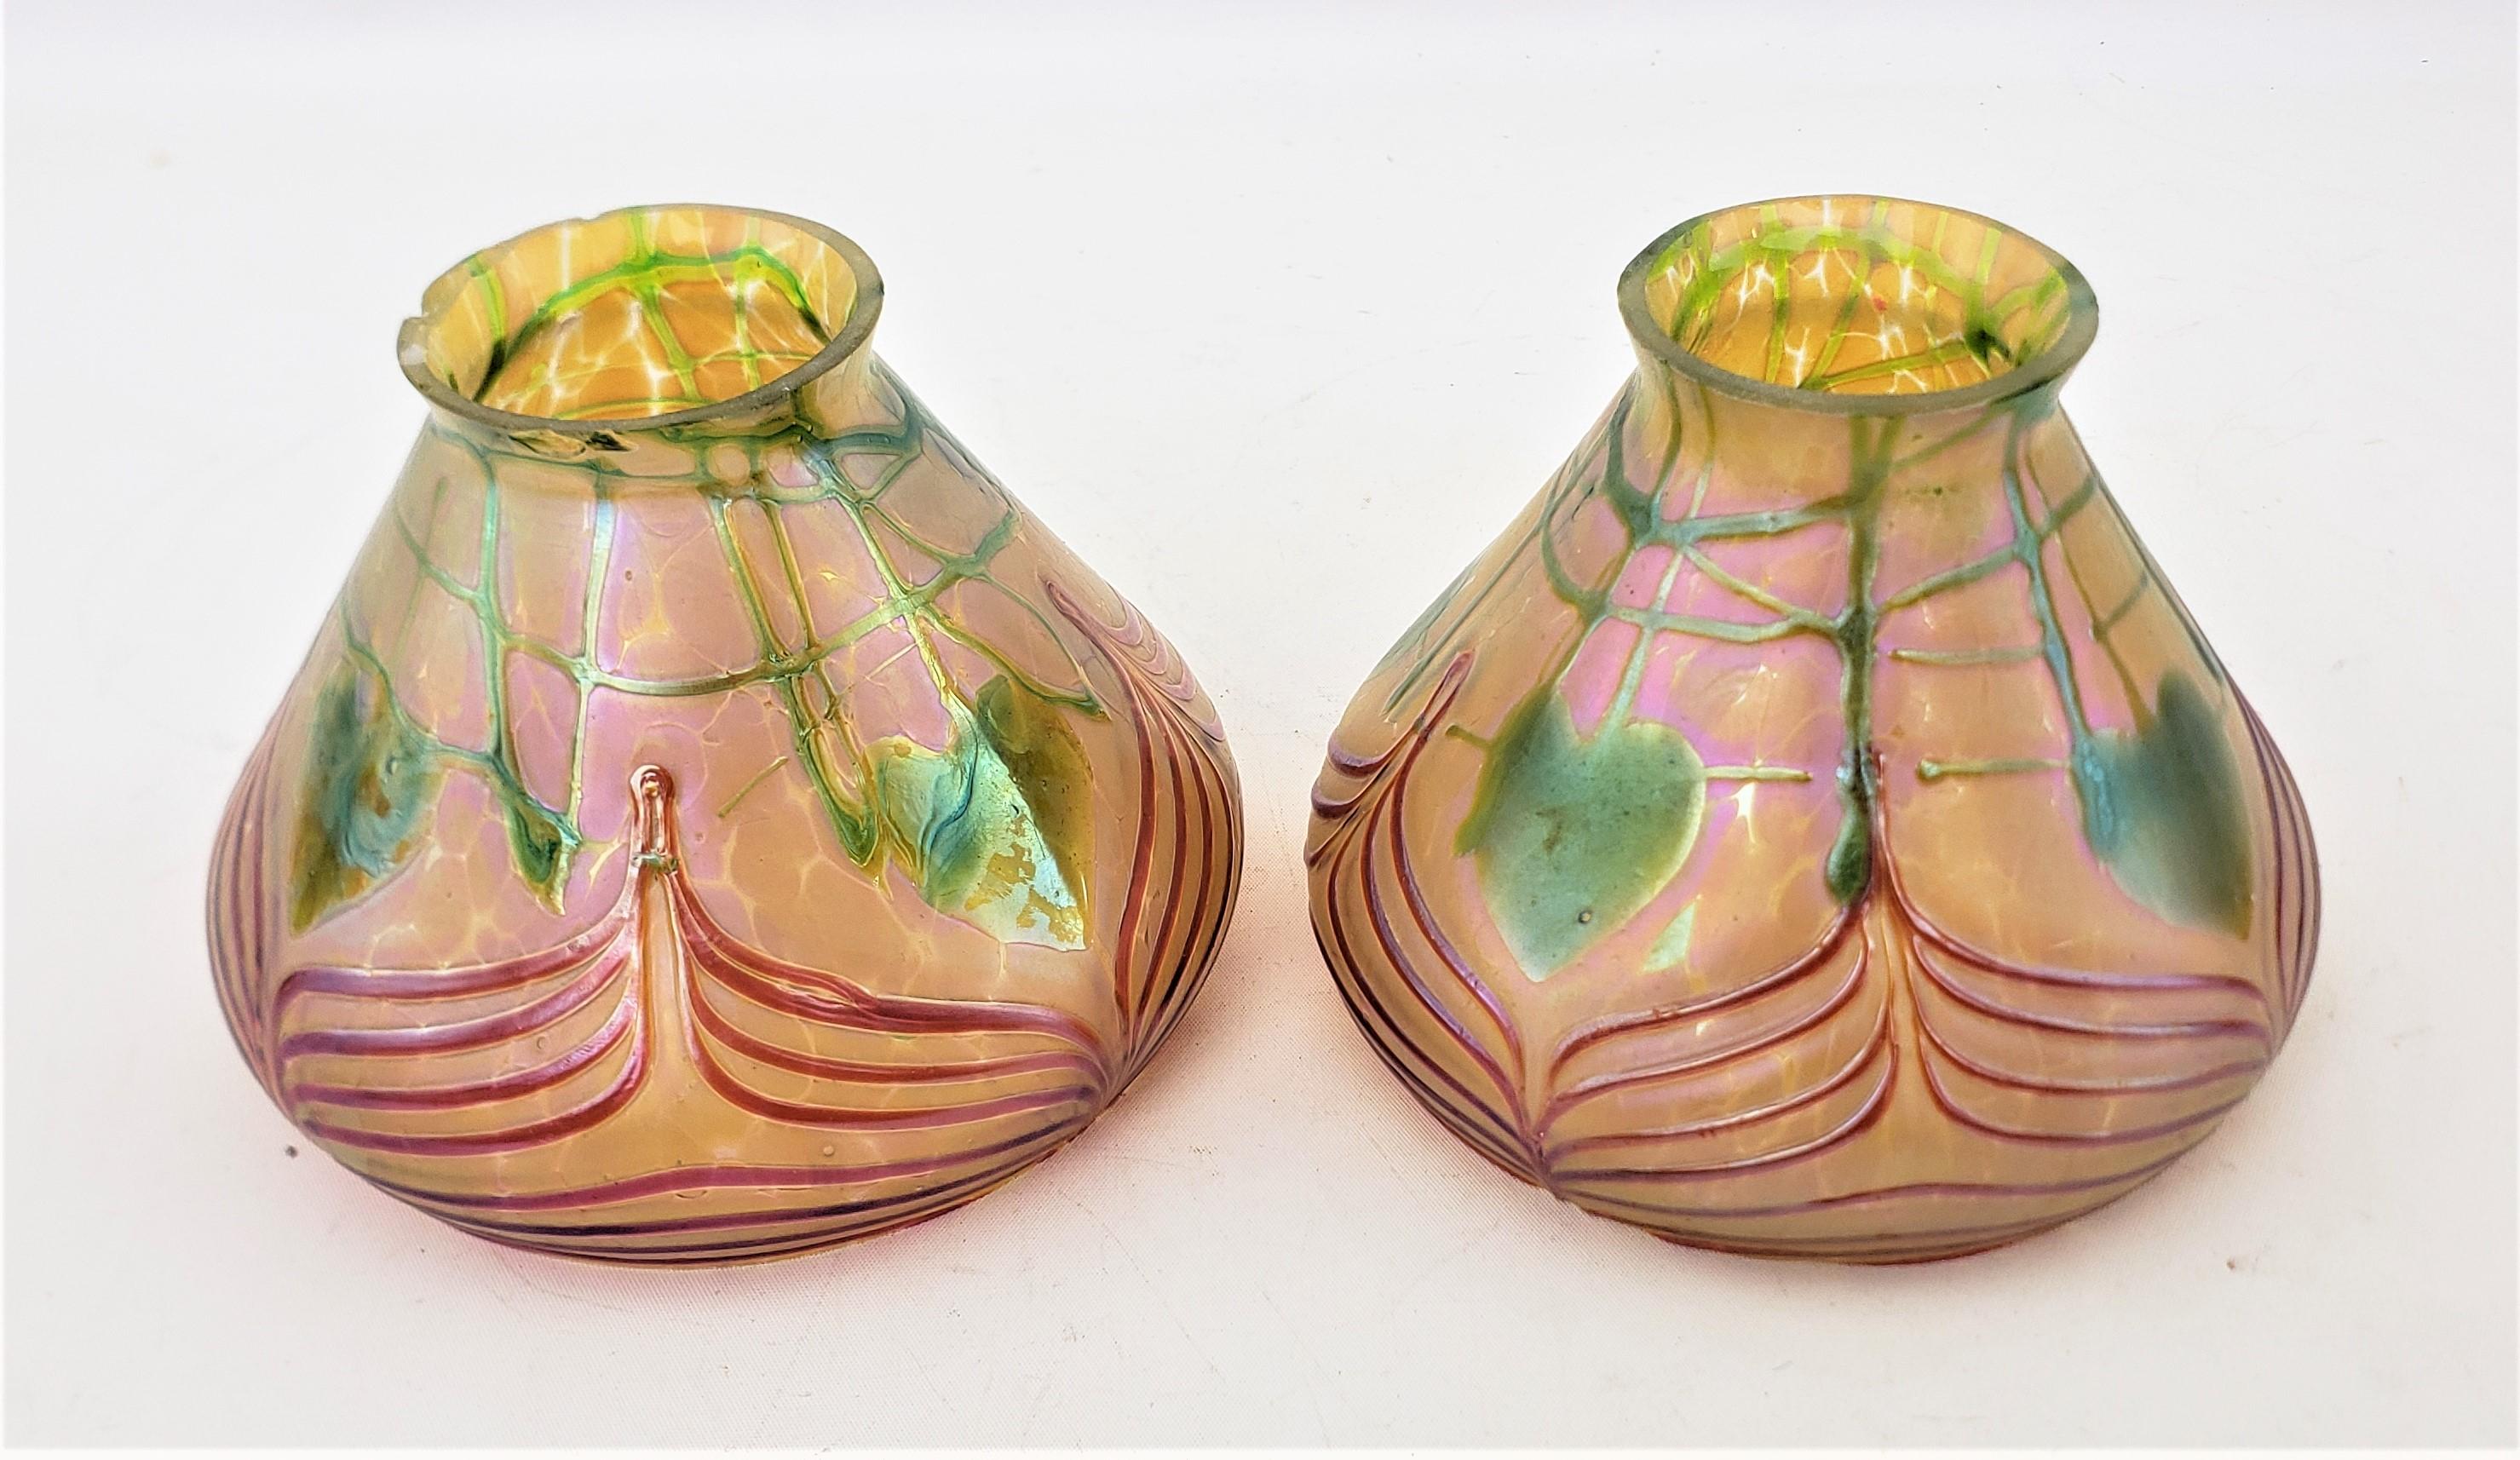 Diese Lampen- oder Lichtschirme aus Kunstglas sind unsigniert, stammen aber vermutlich aus Österreich und sind um 1900 im Jugendstil hergestellt worden. Die Schirme sind aus dunkelgoldenem, klarem Craquelé-Glas mit dunkelgrünen Blättern und Ranken